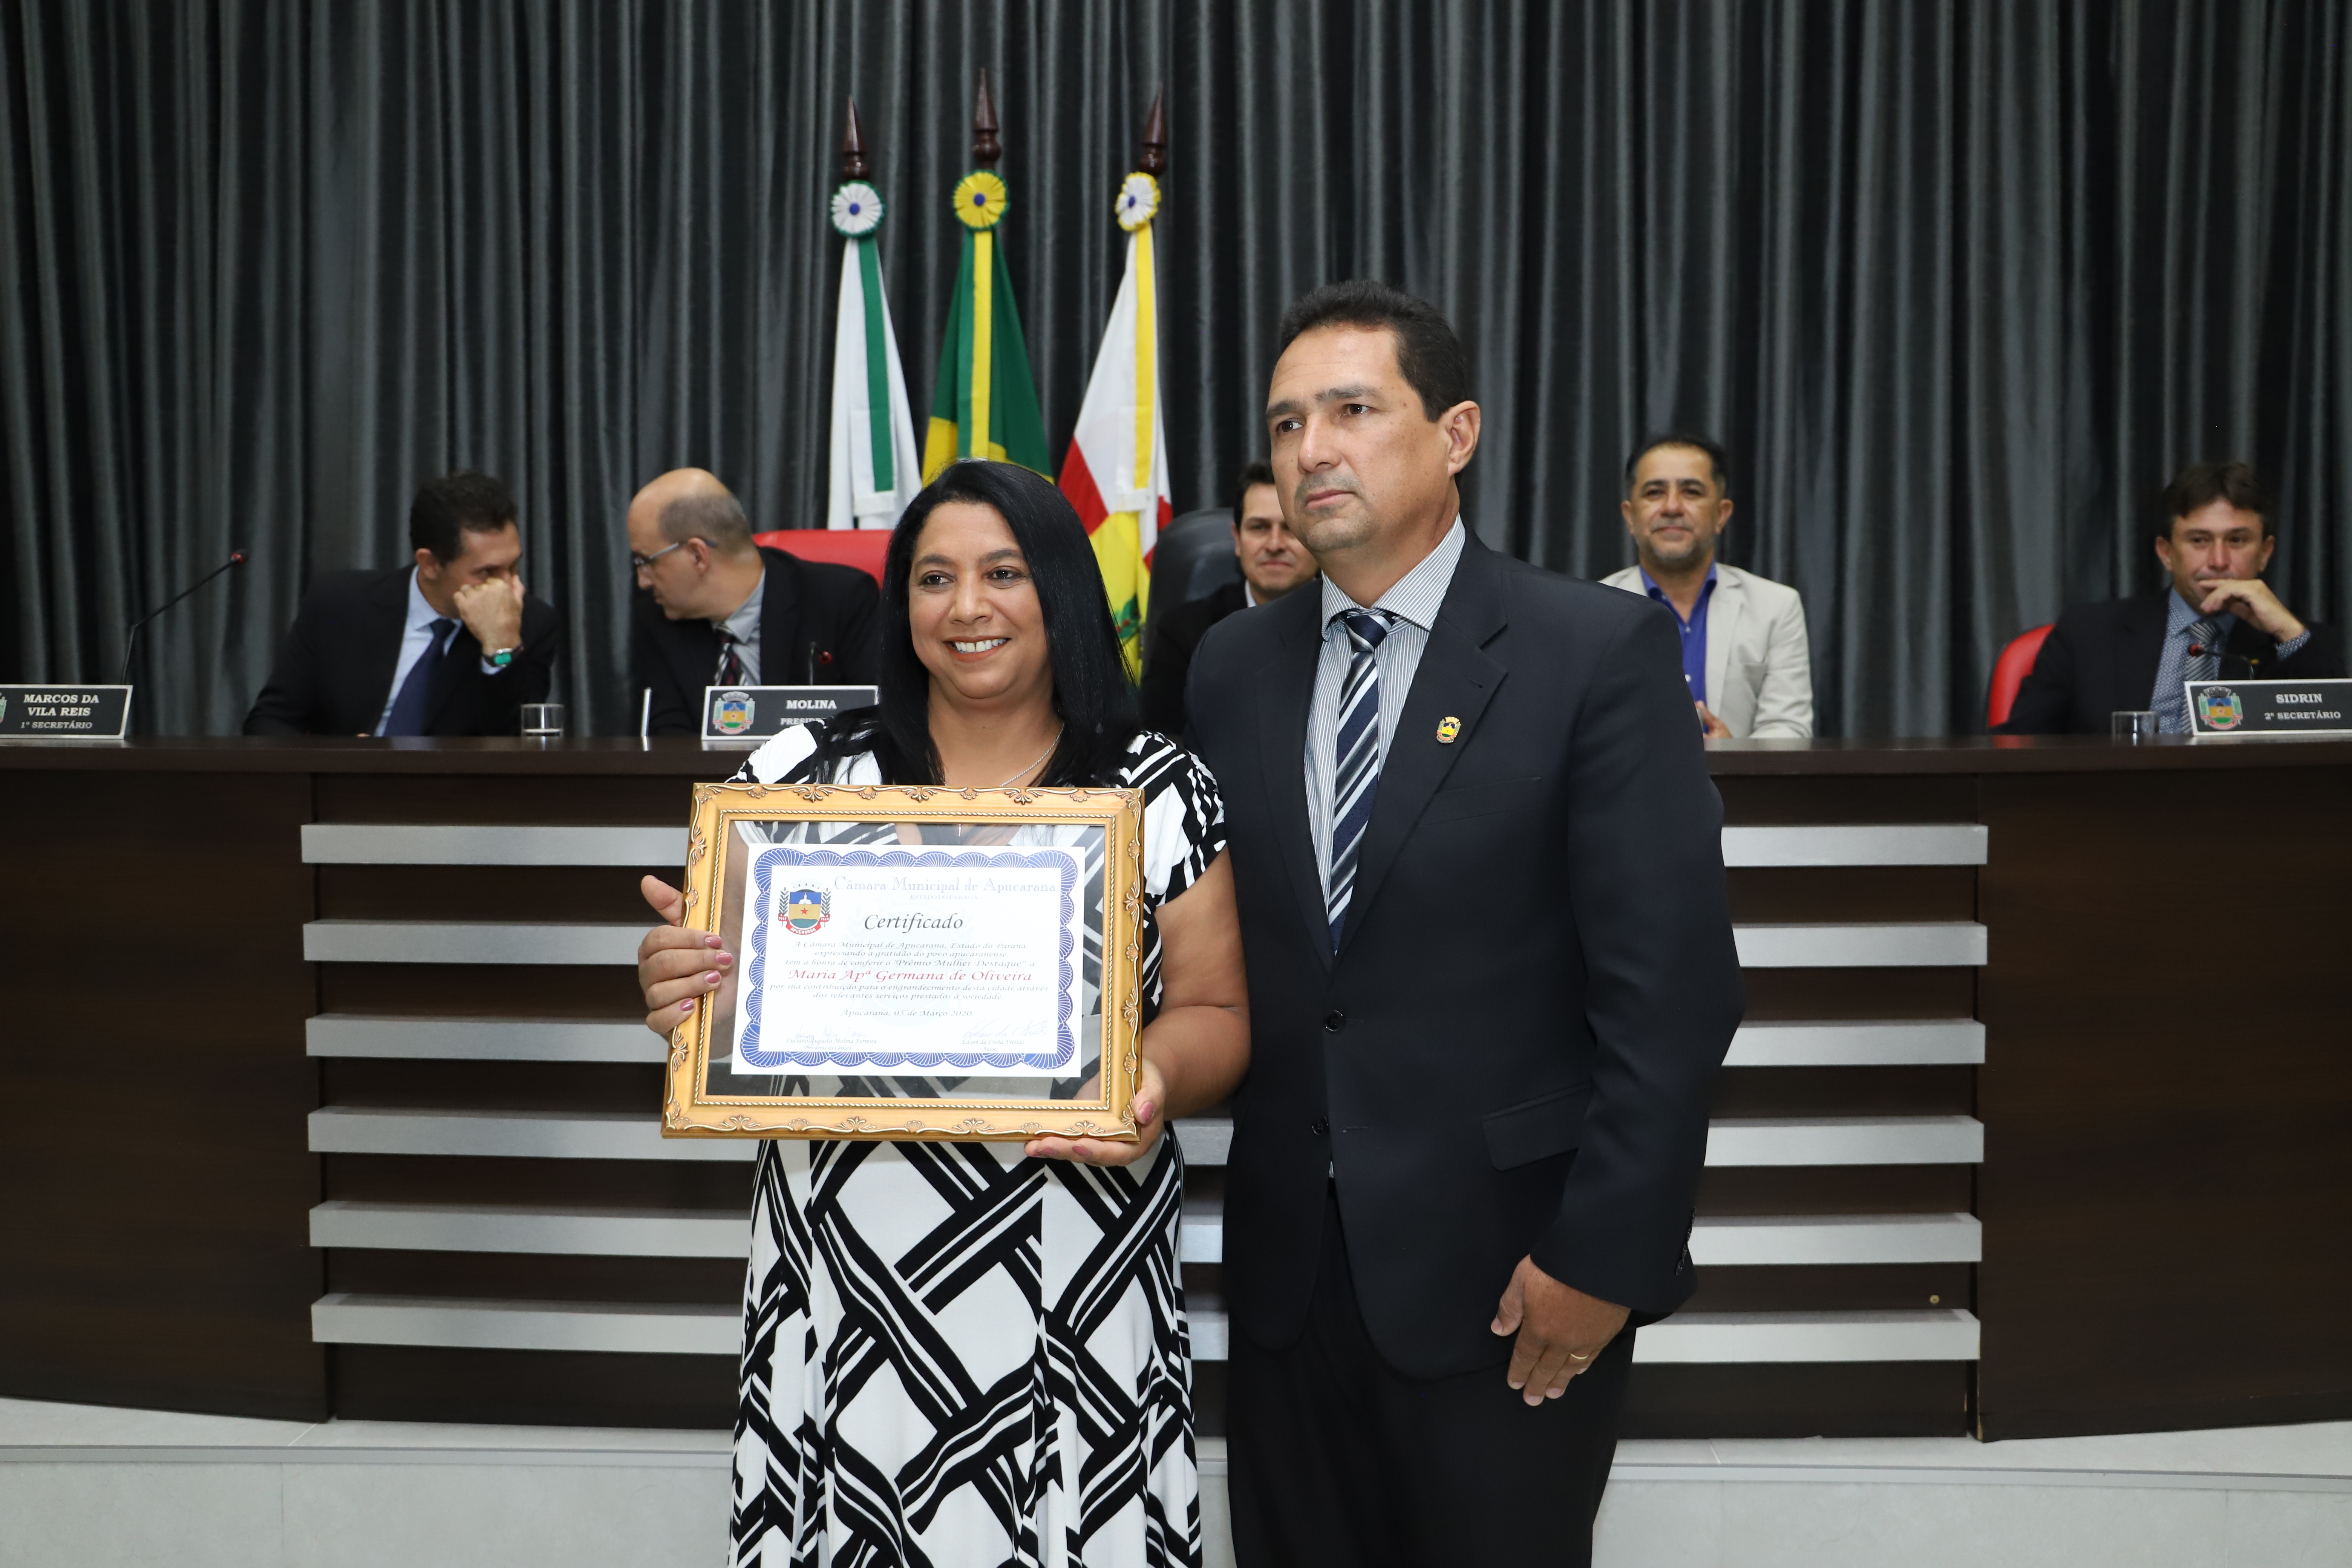 Maria Aparecida recebe homenagem na Câmara de Vereadores em Apucarana